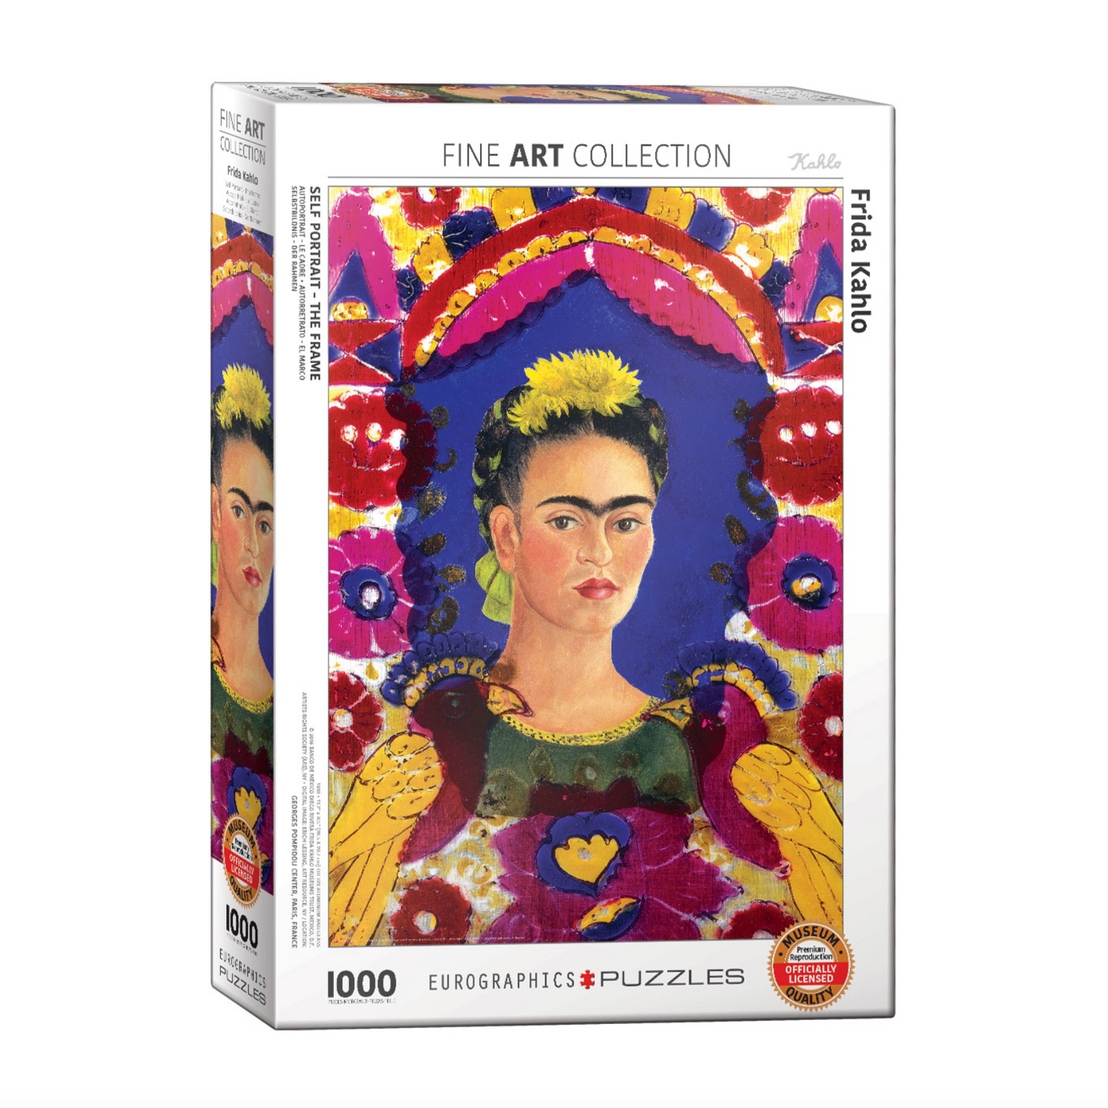 Frida Kahlo Self-Portrait, The Frame